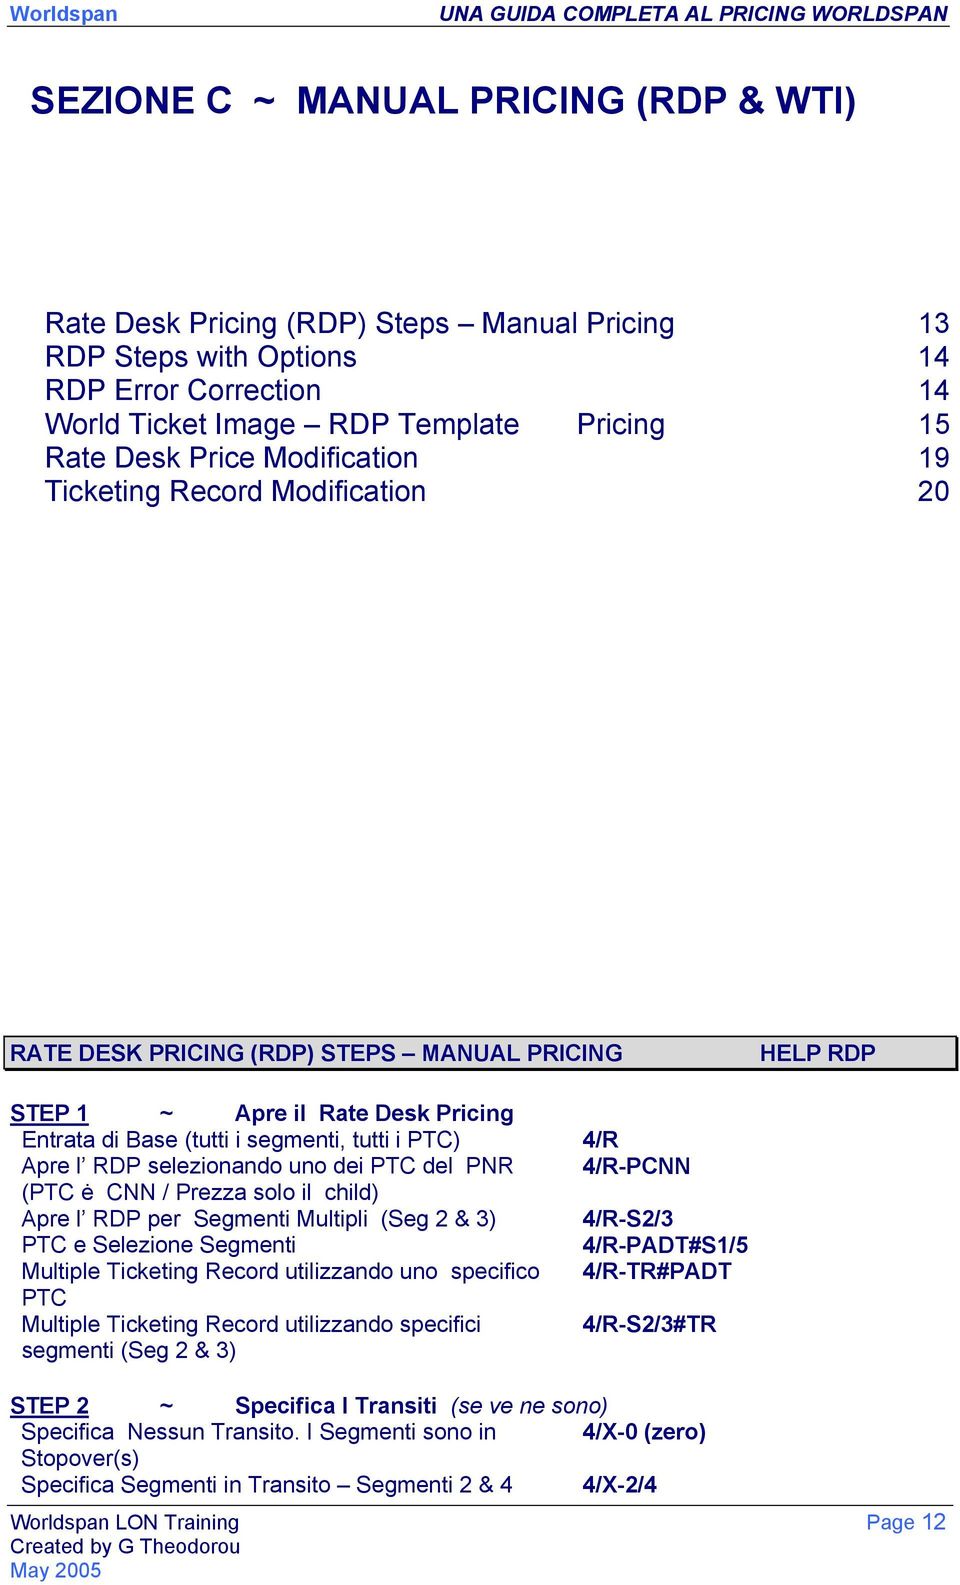 RDP selezionando uno dei PTC del PNR 4/R-PCNN (PTC ė CNN / Prezza solo il child) Apre l RDP per Segmenti Multipli (Seg 2 & 3) 4/R-S2/3 PTC e Selezione Segmenti 4/R-PADT#S1/5 Multiple Ticketing Record